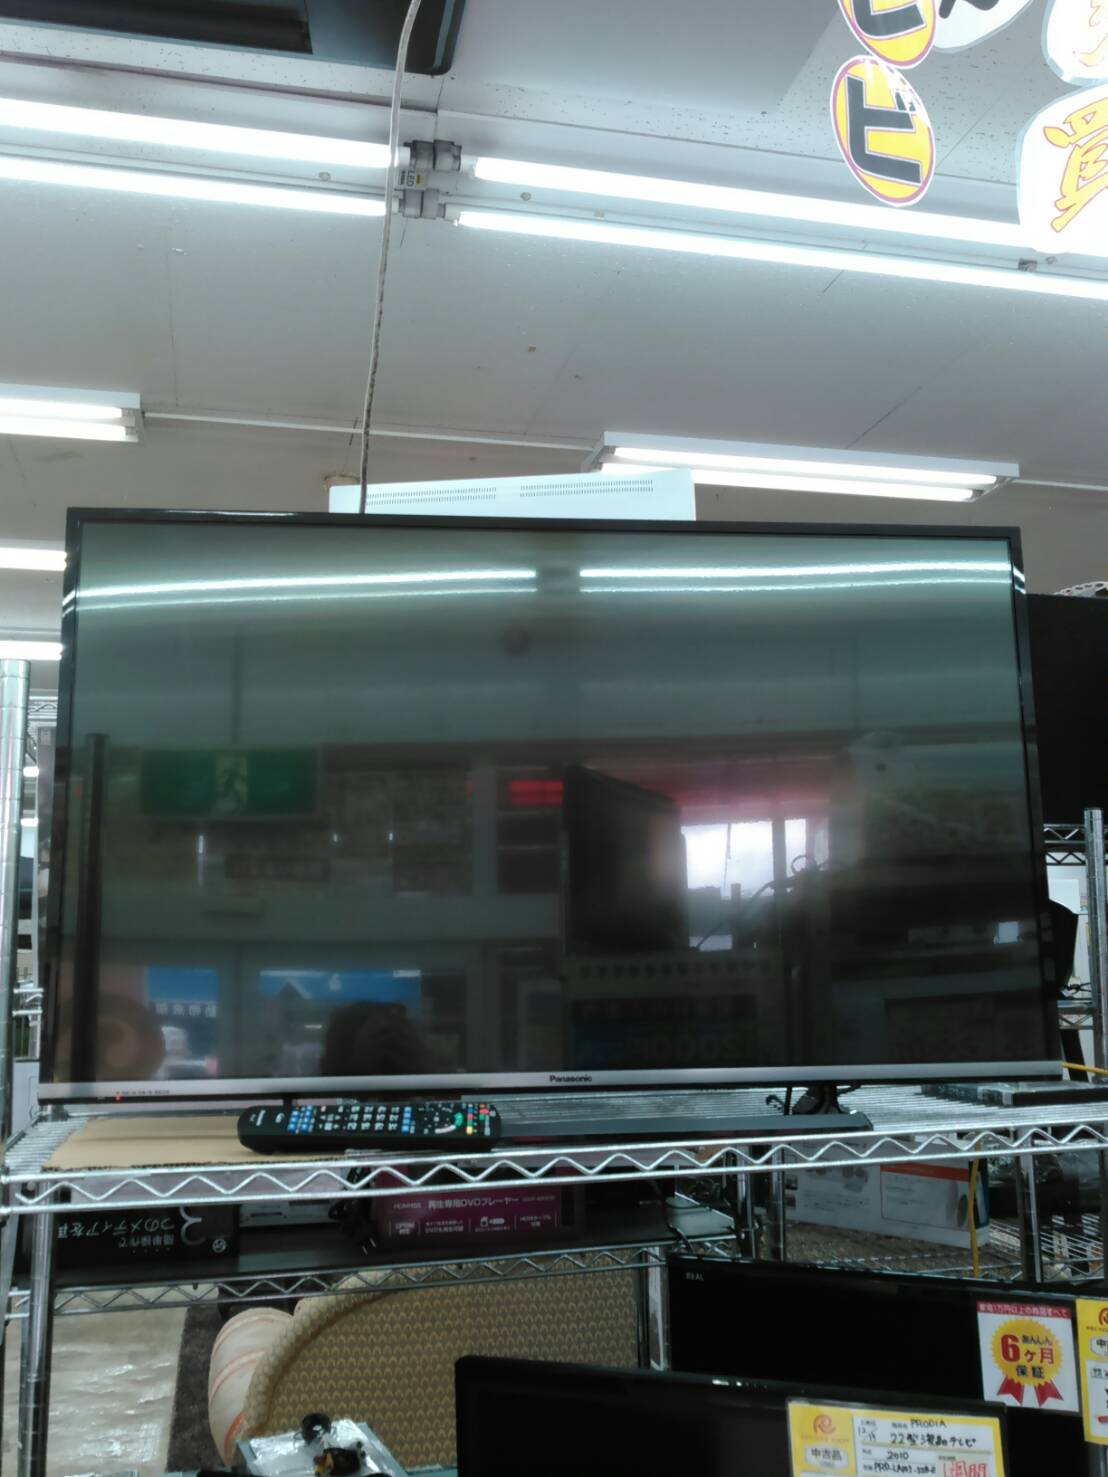 Panasonic・パナソニック 43インチ液晶テレビ 2015 TH-43CS650 買取しました！ - リサイクルマートは現在冷蔵庫の買取、家具の買取強化中です！お気軽にお問い合わせください。